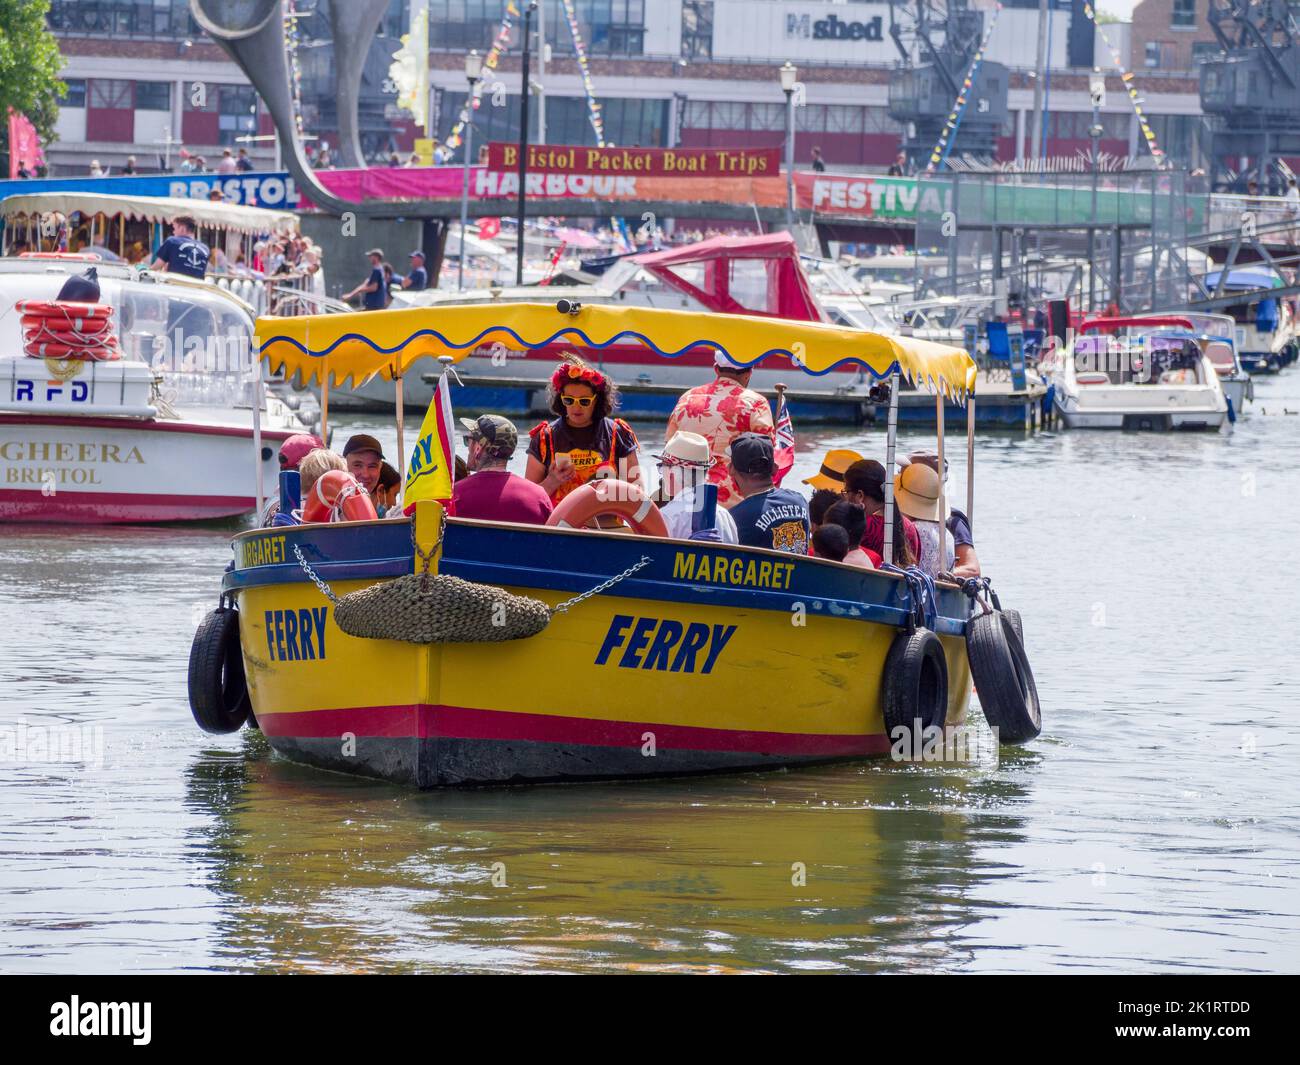 Le ferry-bus Margaret dans le port flottant de Bristol dans la ville de Bristol pendant le Festival de Bristol Harbour en 2022, Angleterre, Royaume-Uni. Banque D'Images